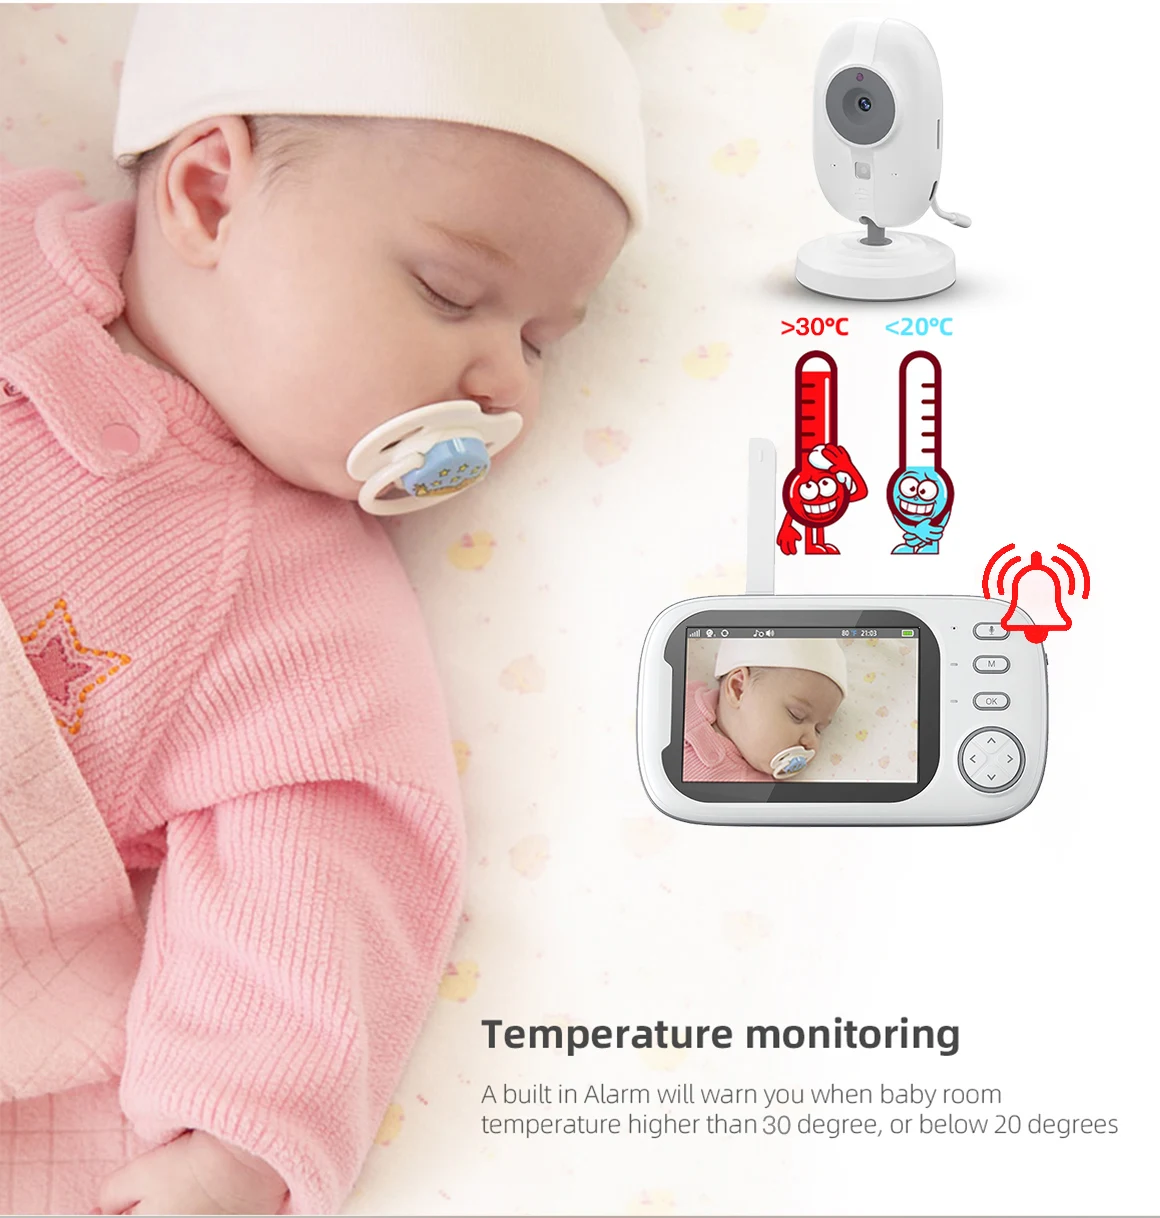 new vb603 baby monitoring camera 3.5inch